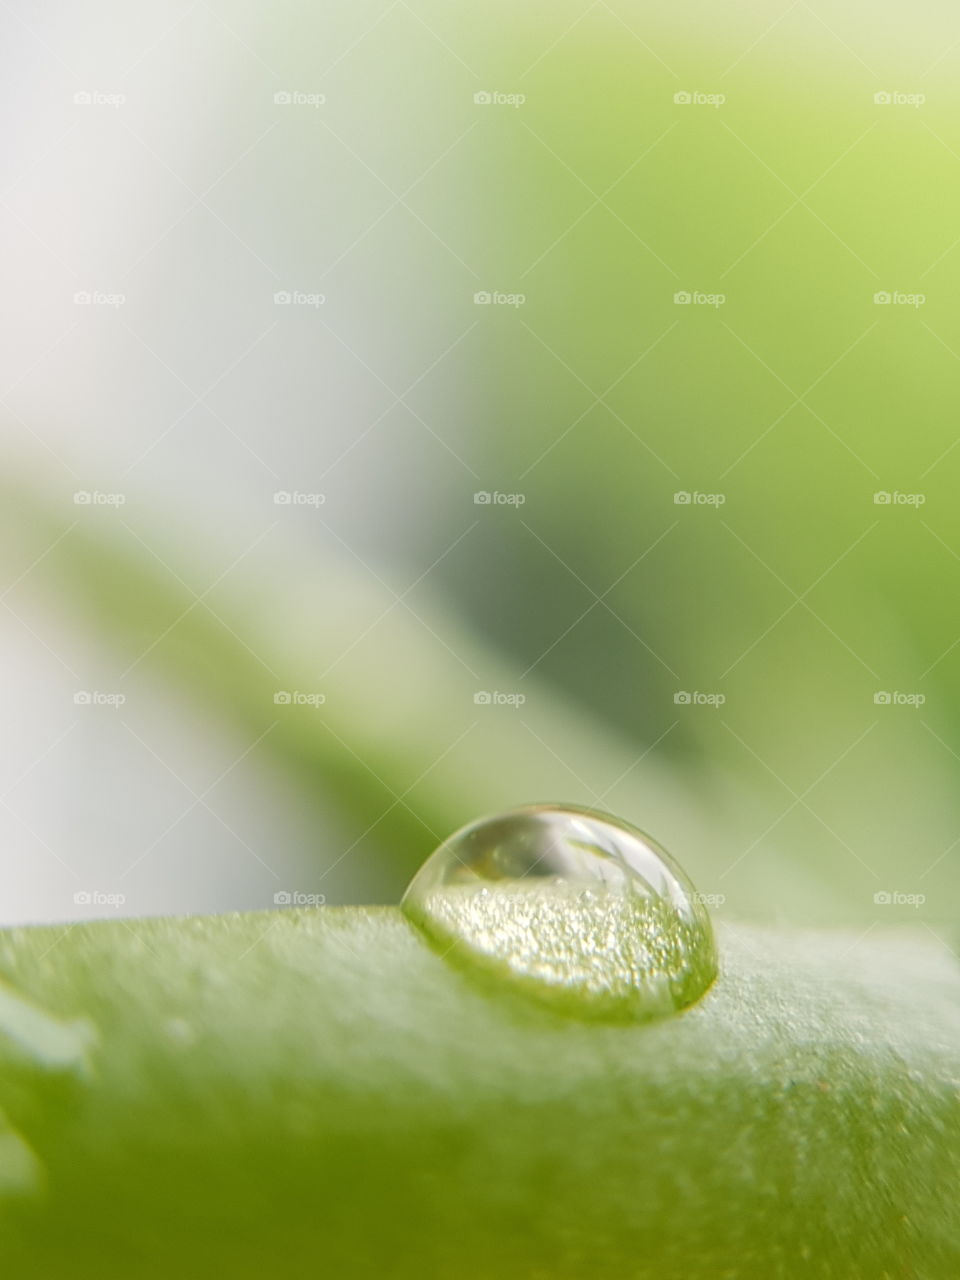 water drop on 
xerophyte plant green fresh